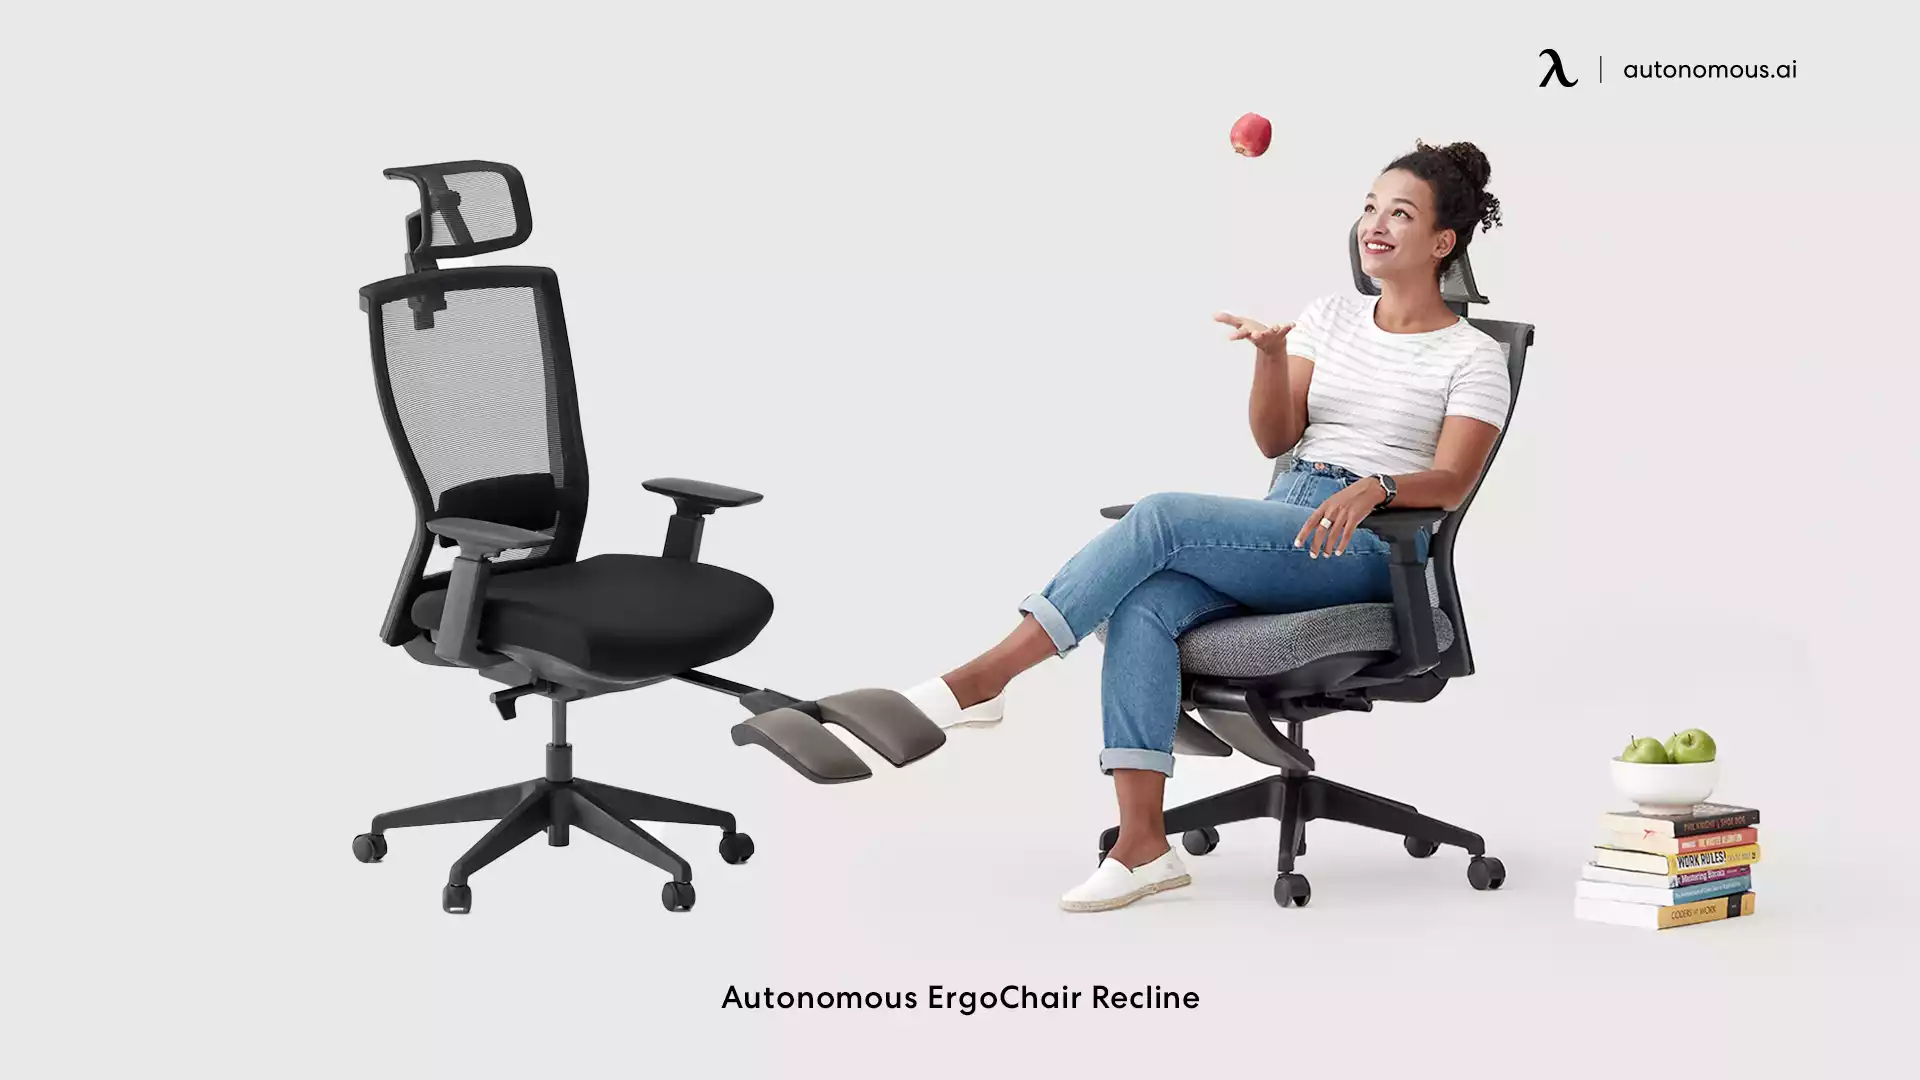 ErgoChair Recline swivel task chair